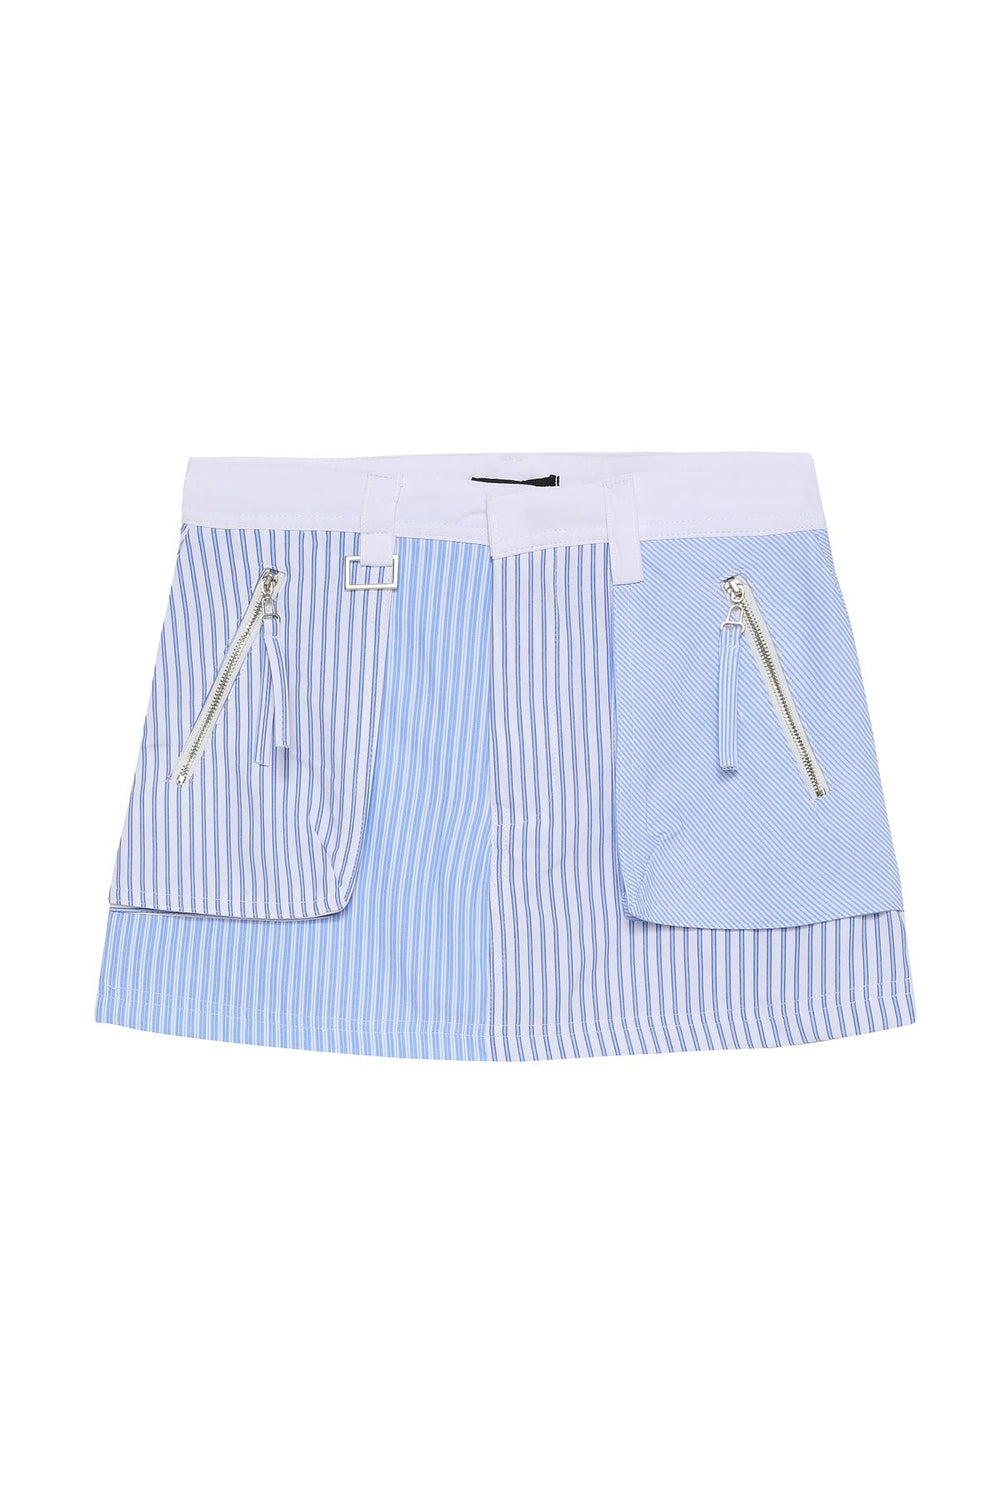 Inner Shorts Striped Zipper Mini Skirt Blue